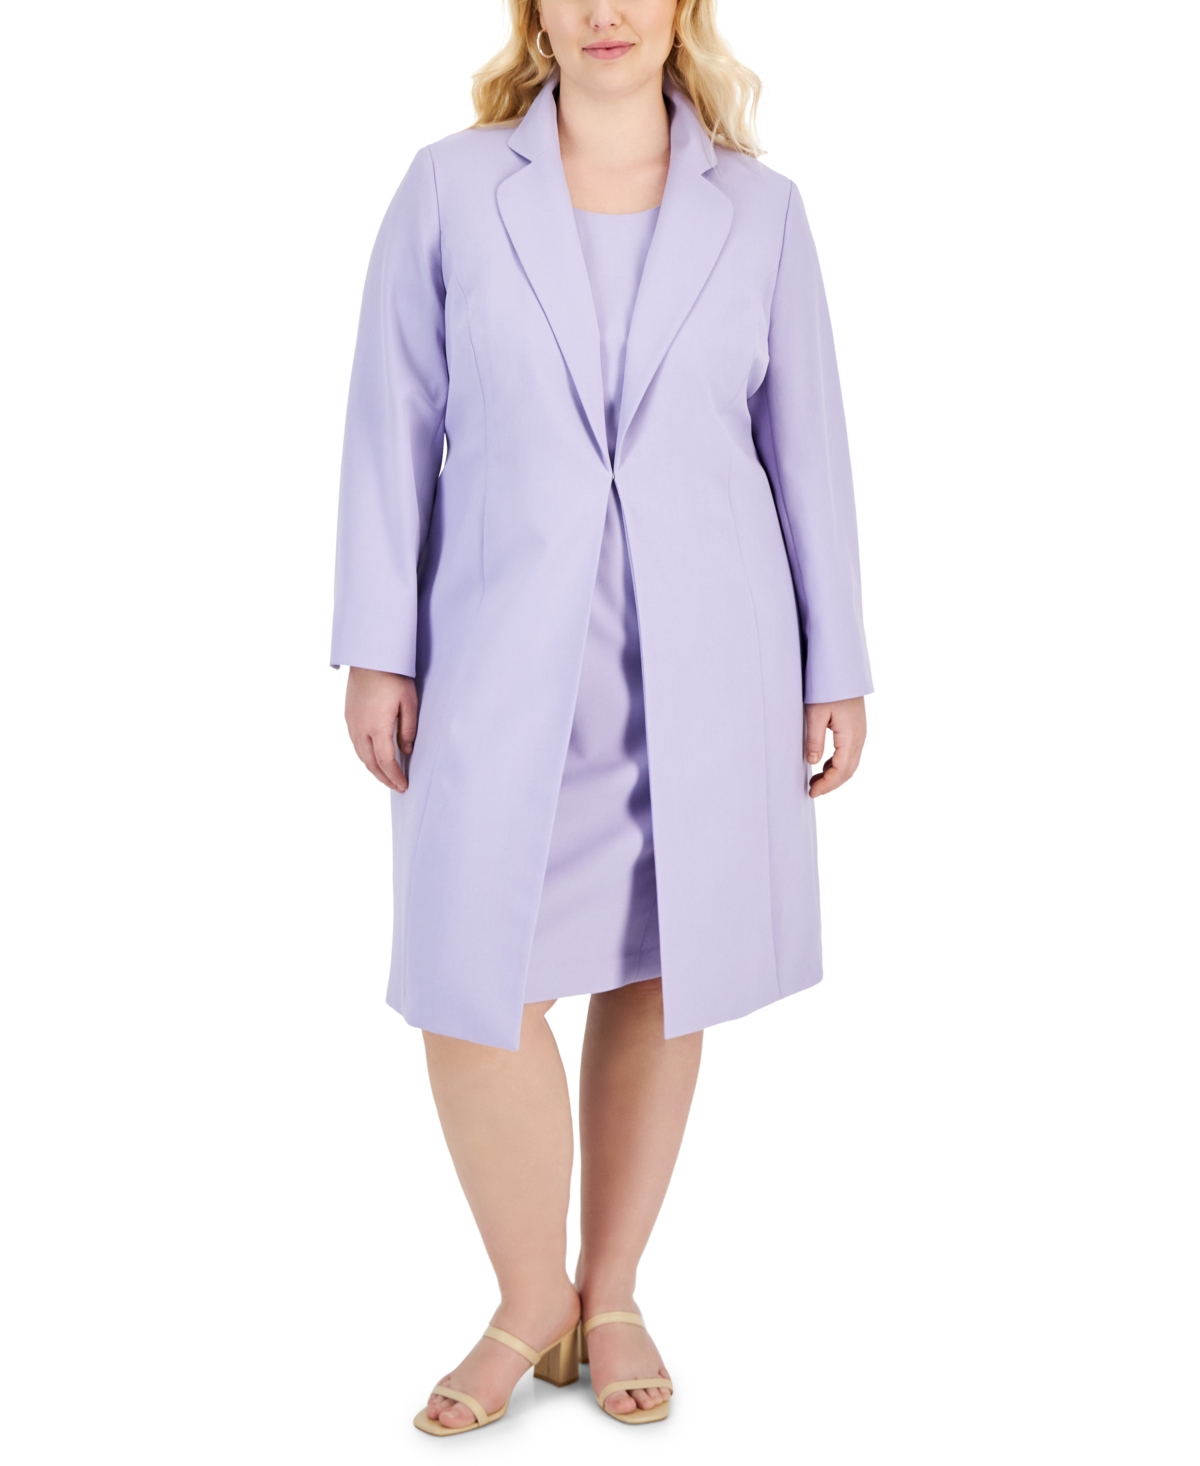 Plus Size Topper Jacket & Sheath Dress Suit - Celeste Blue